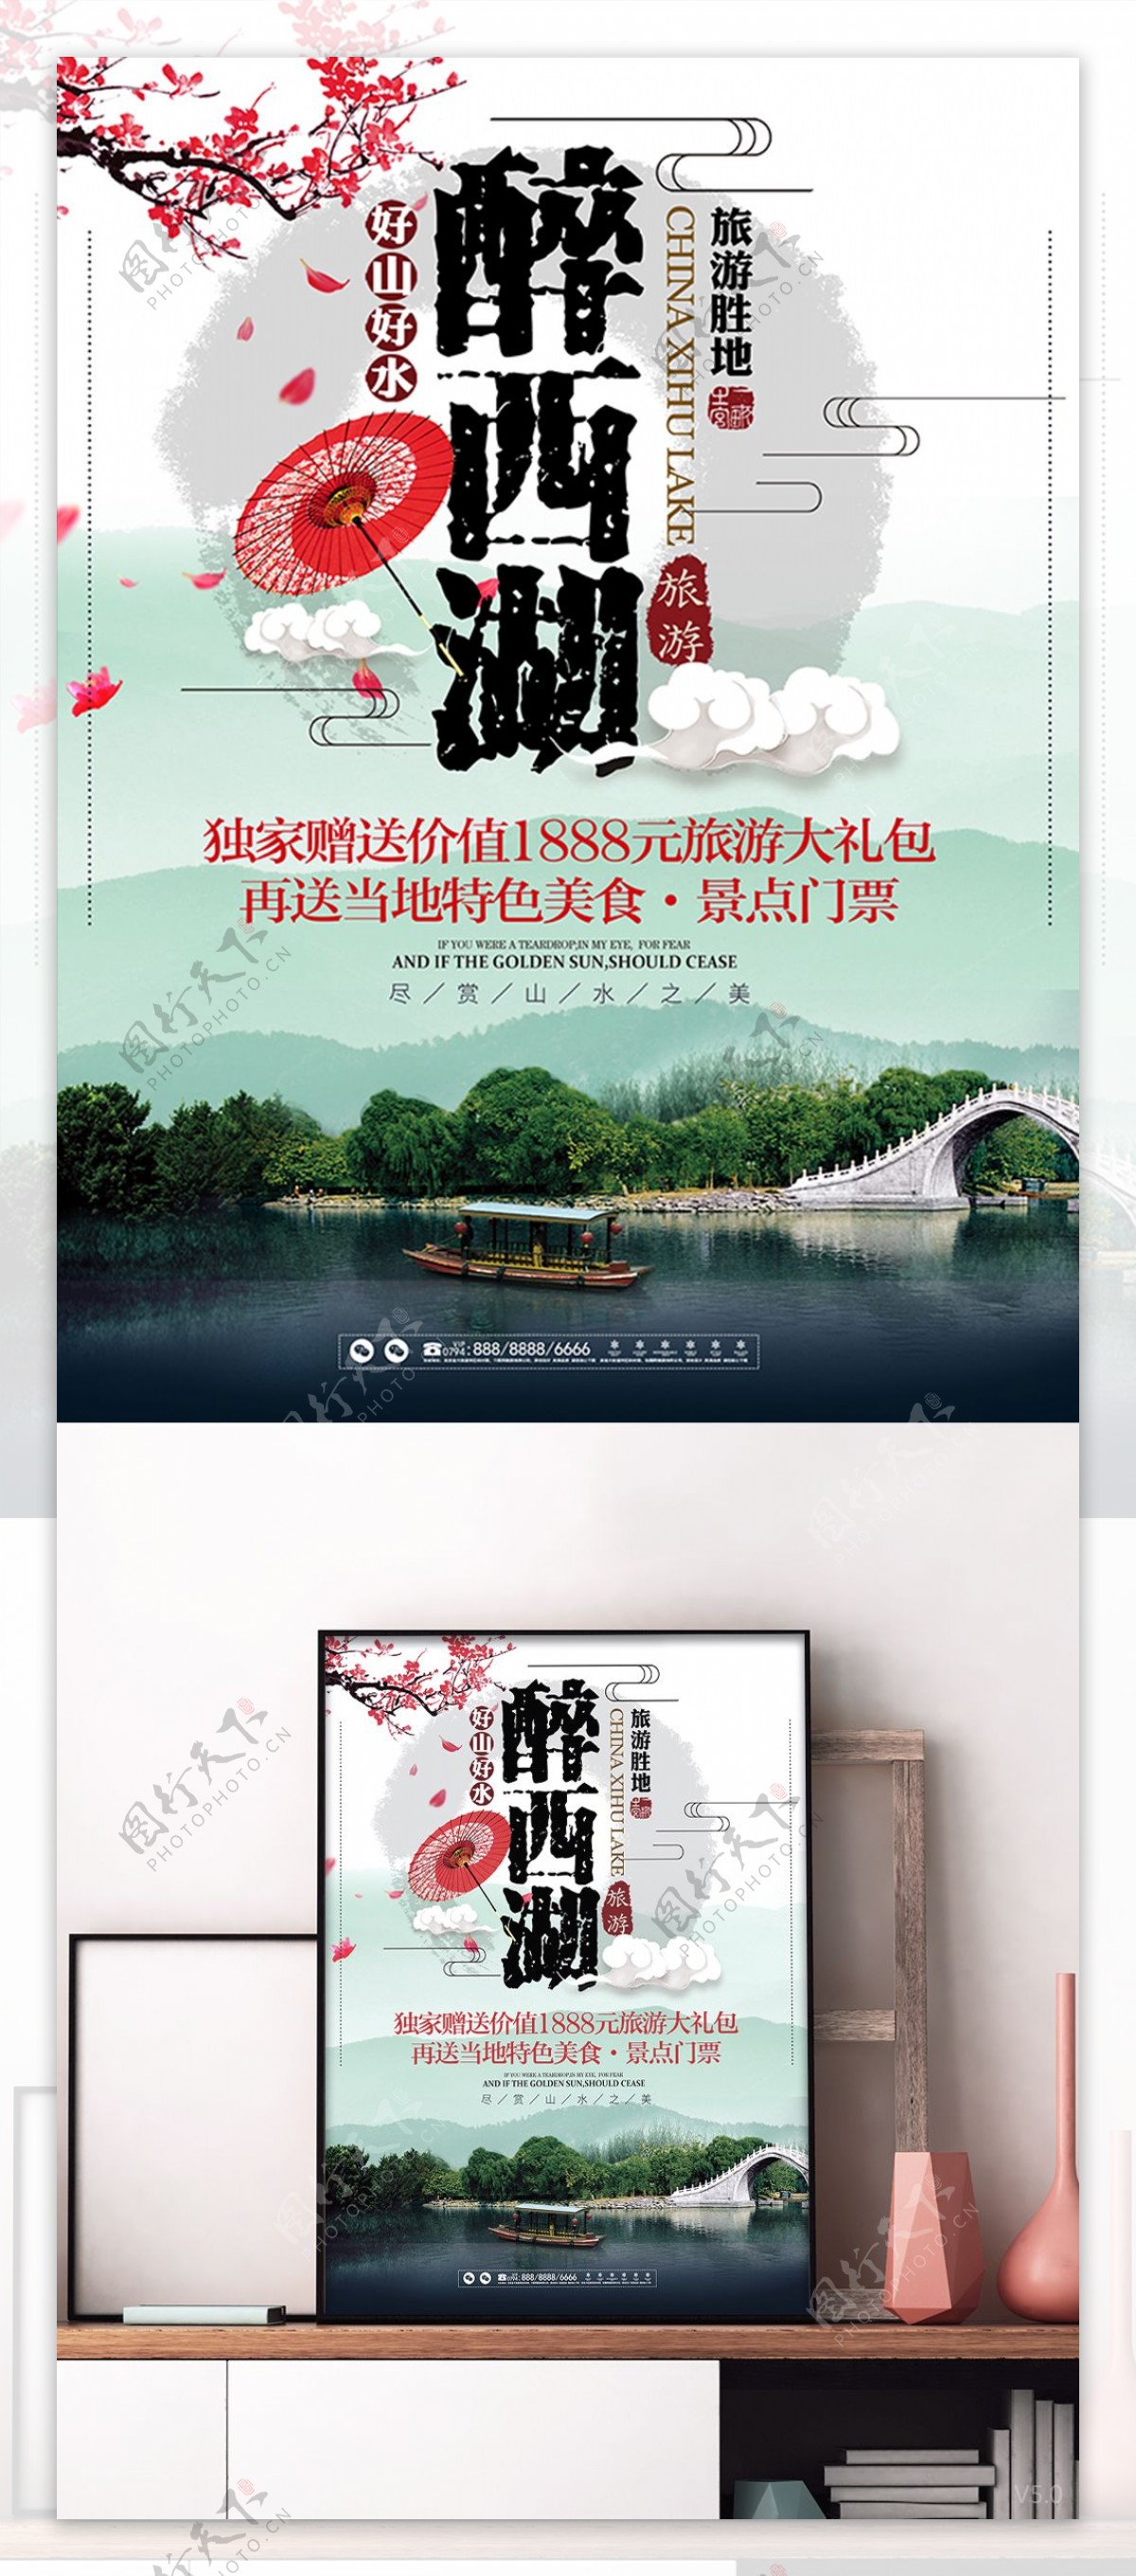 中国风西湖旅游旅行宣传促销海报